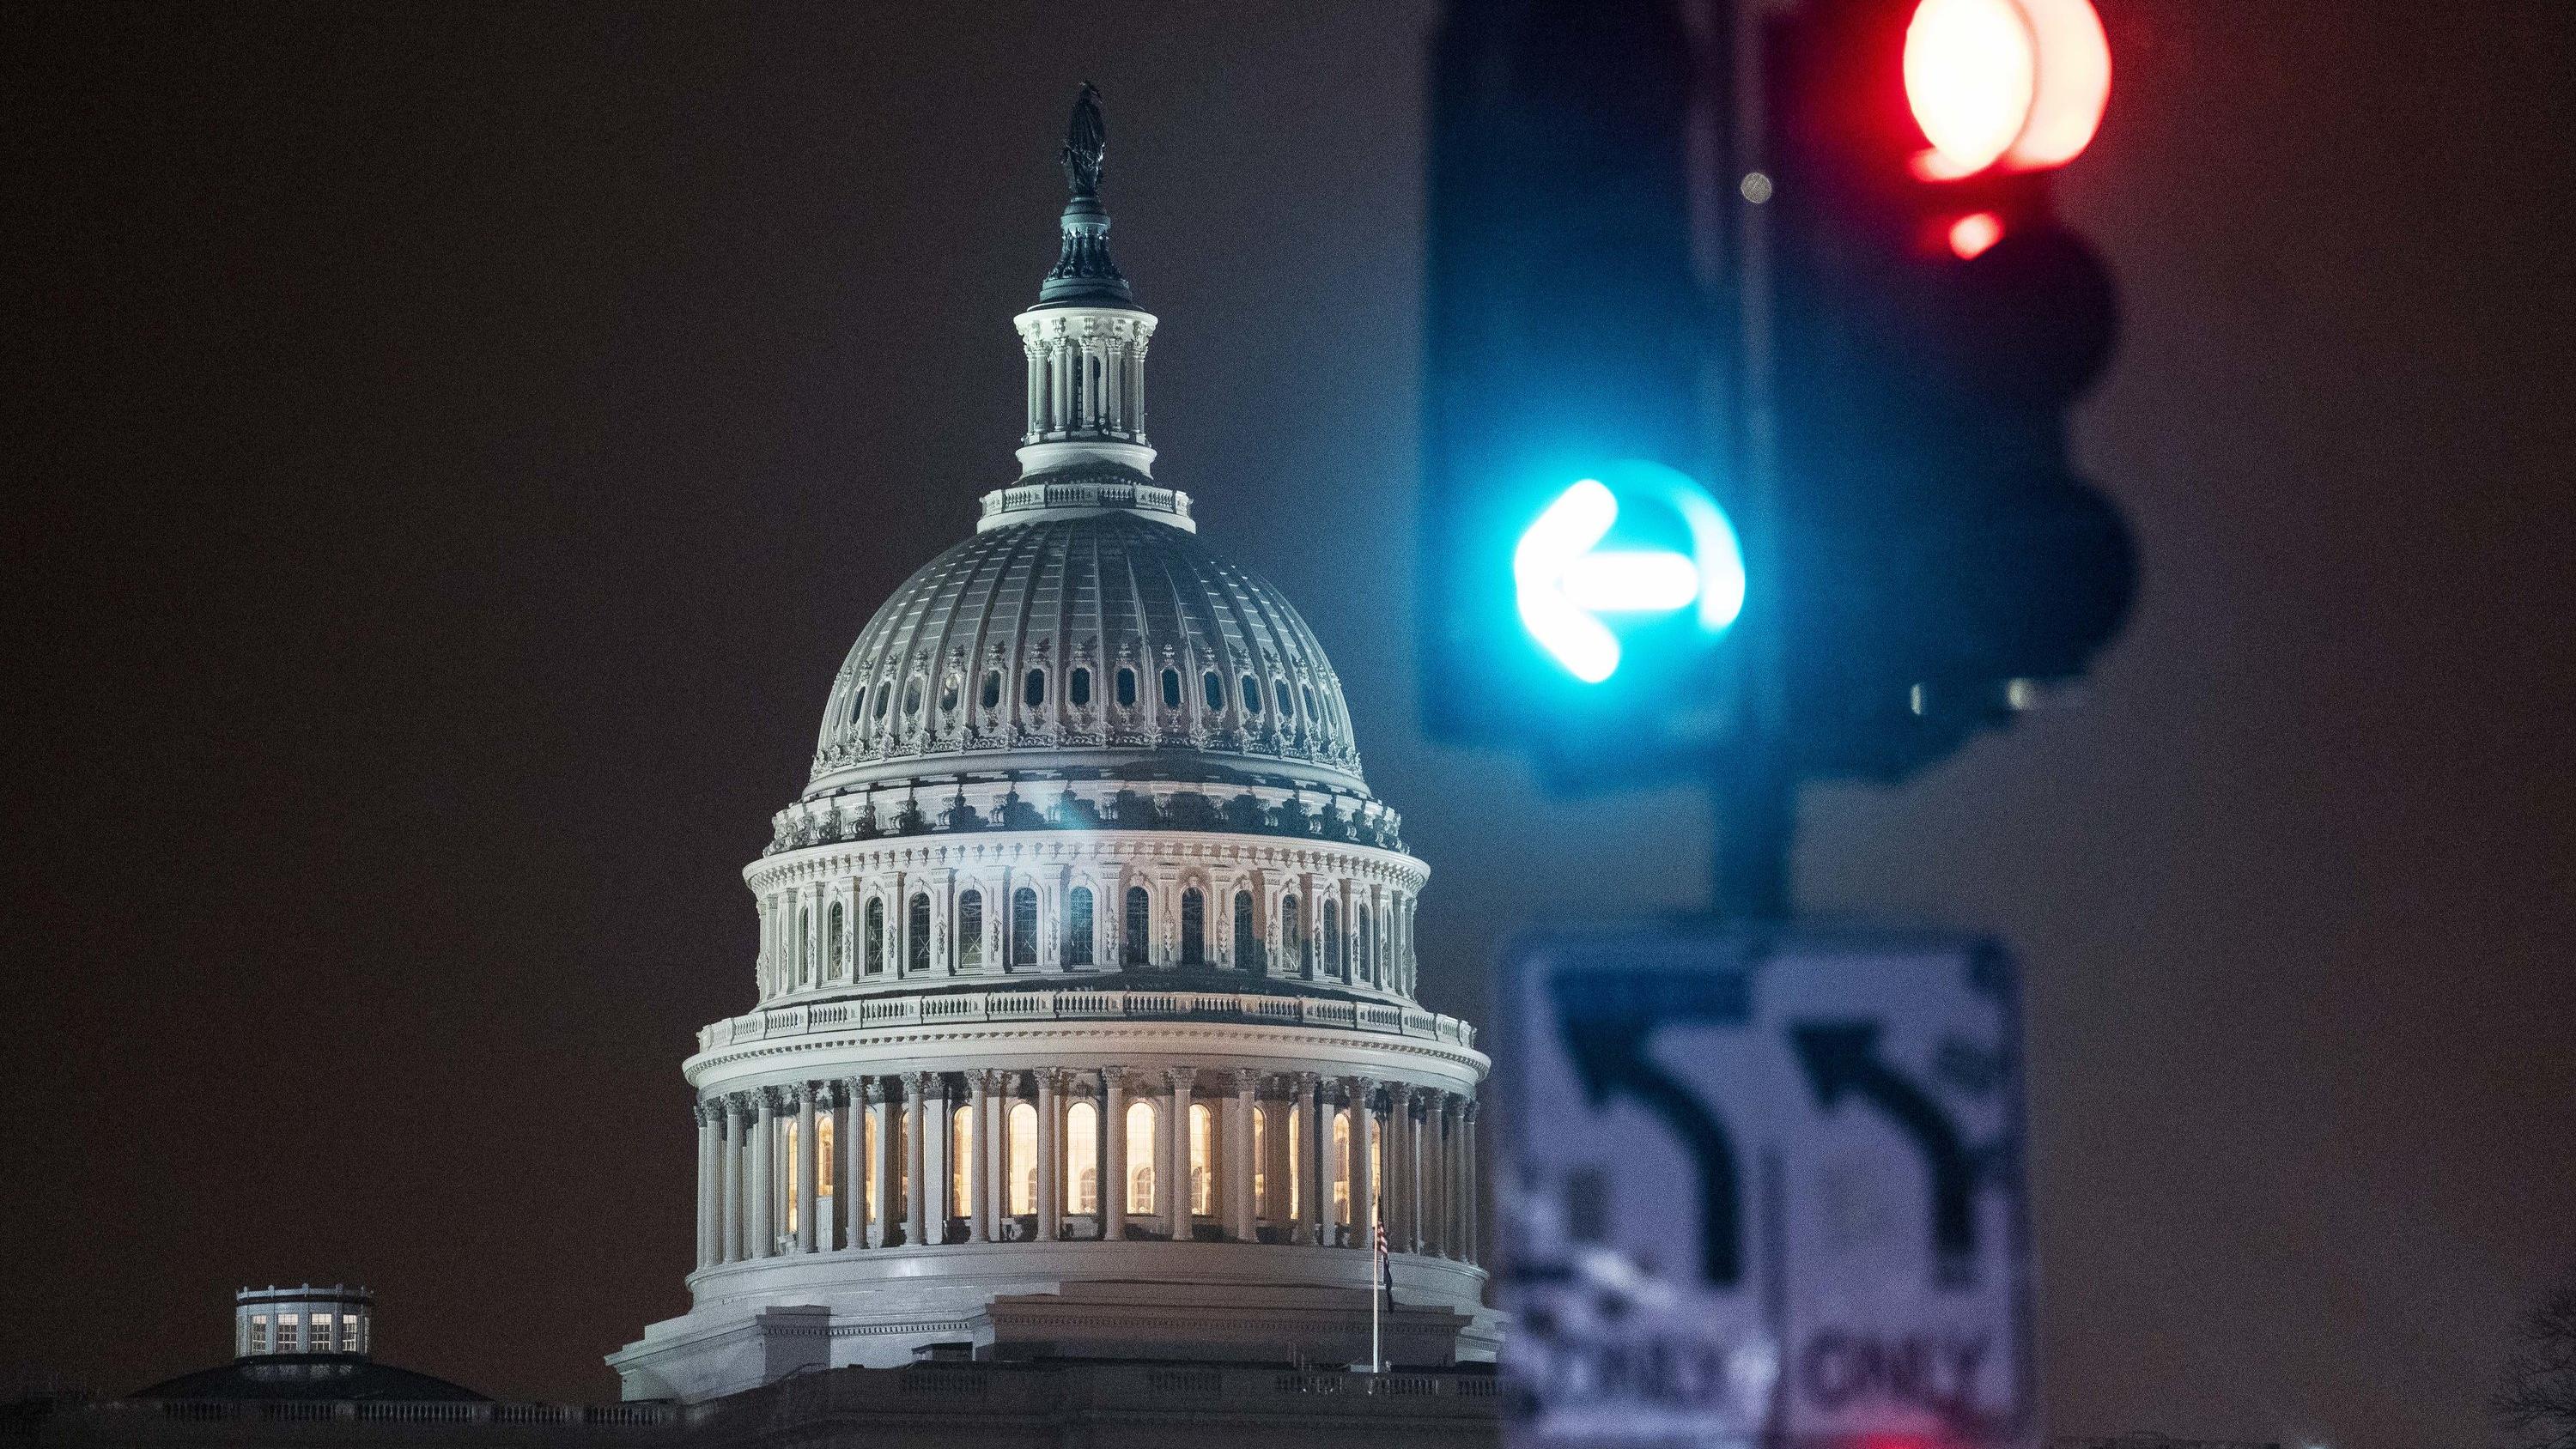 01.01.2021, USA, Washington D.C.: Vor dem Kapitol, dem Sitz des US-Kongresses, leuchten Ampeln rot und grün. Der US-Kongress hat erstmals ein Veto von Präsident Trump überstimmt. Foto: Liu Jie/XinHua/dpa +++ dpa-Bildfunk +++